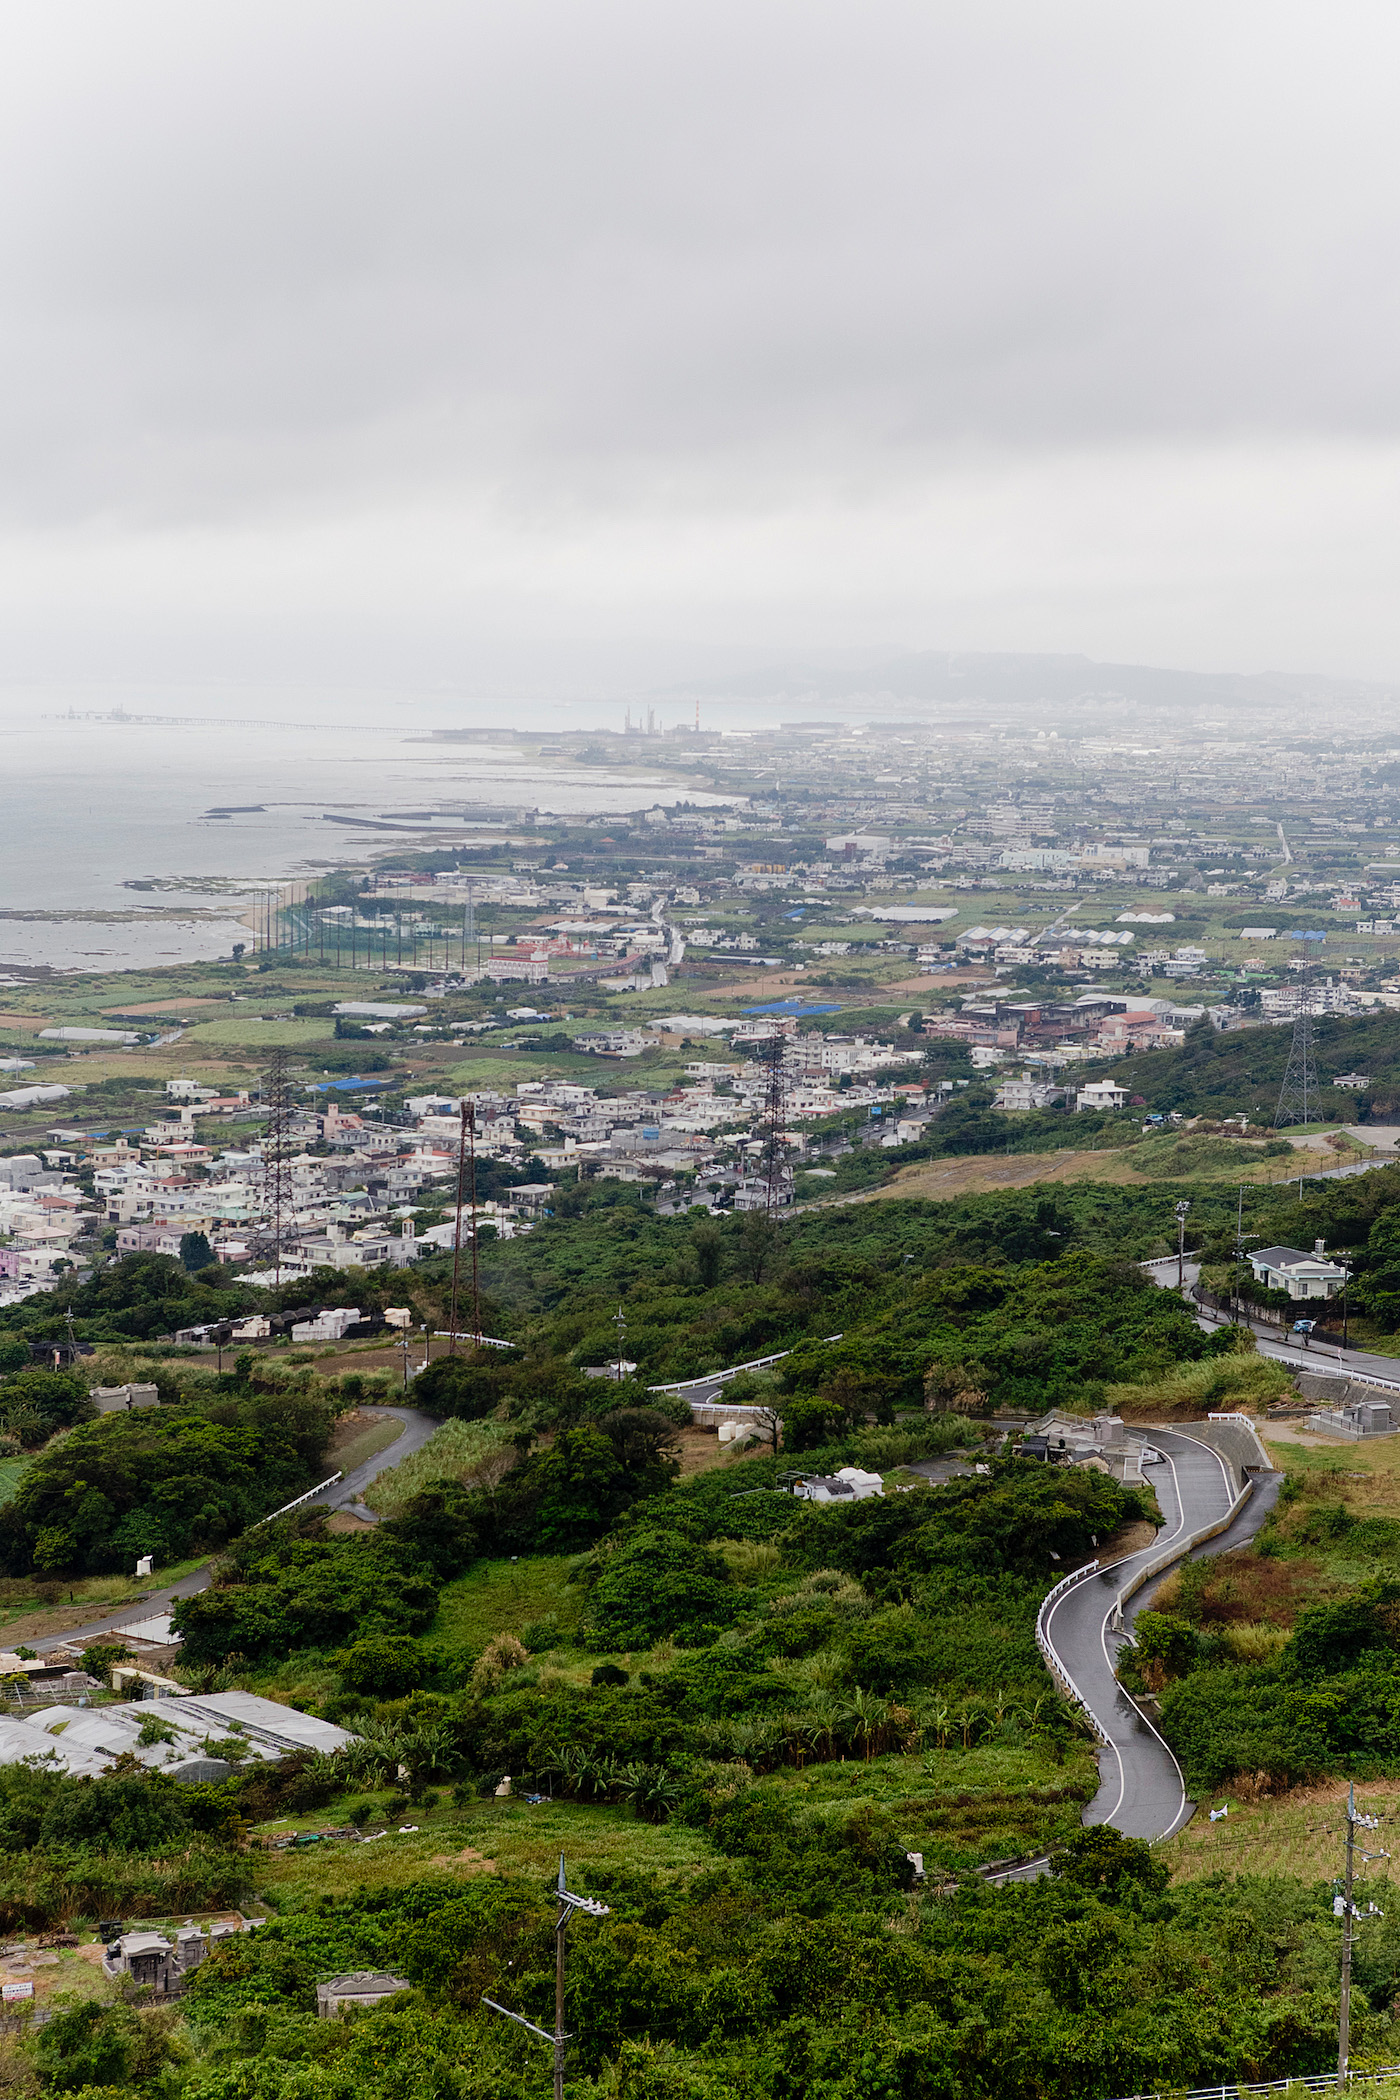 The golden bun - okinawa travel guide - okinawa beach - okinawa klima - japan islands